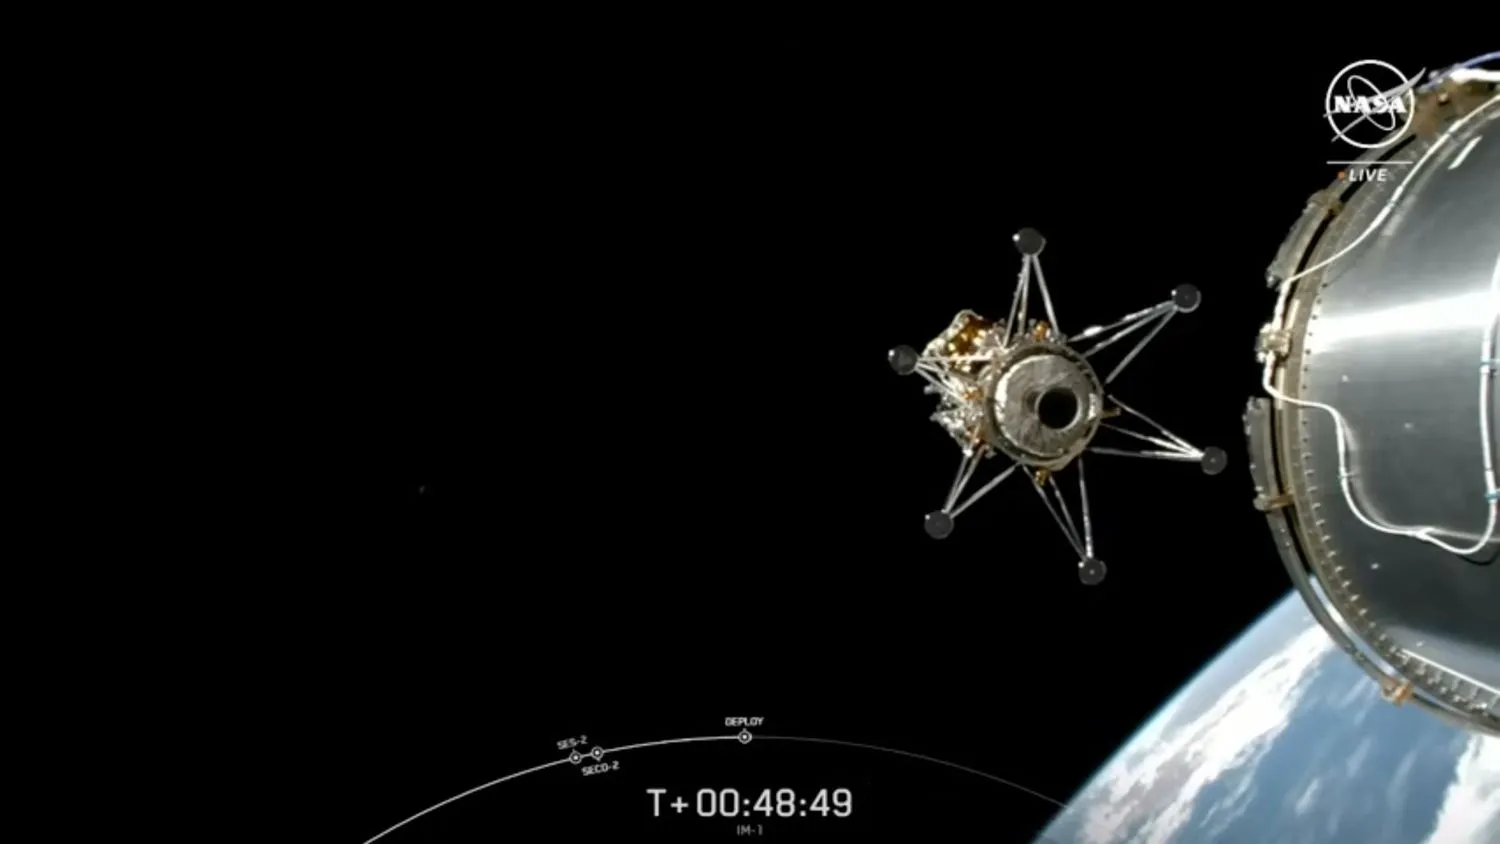 Ein goldenes und silbernes Raumschiff wird von der silbernen Oberstufe seiner Rakete abgesetzt, mit dem Rand der Erde im Hintergrund